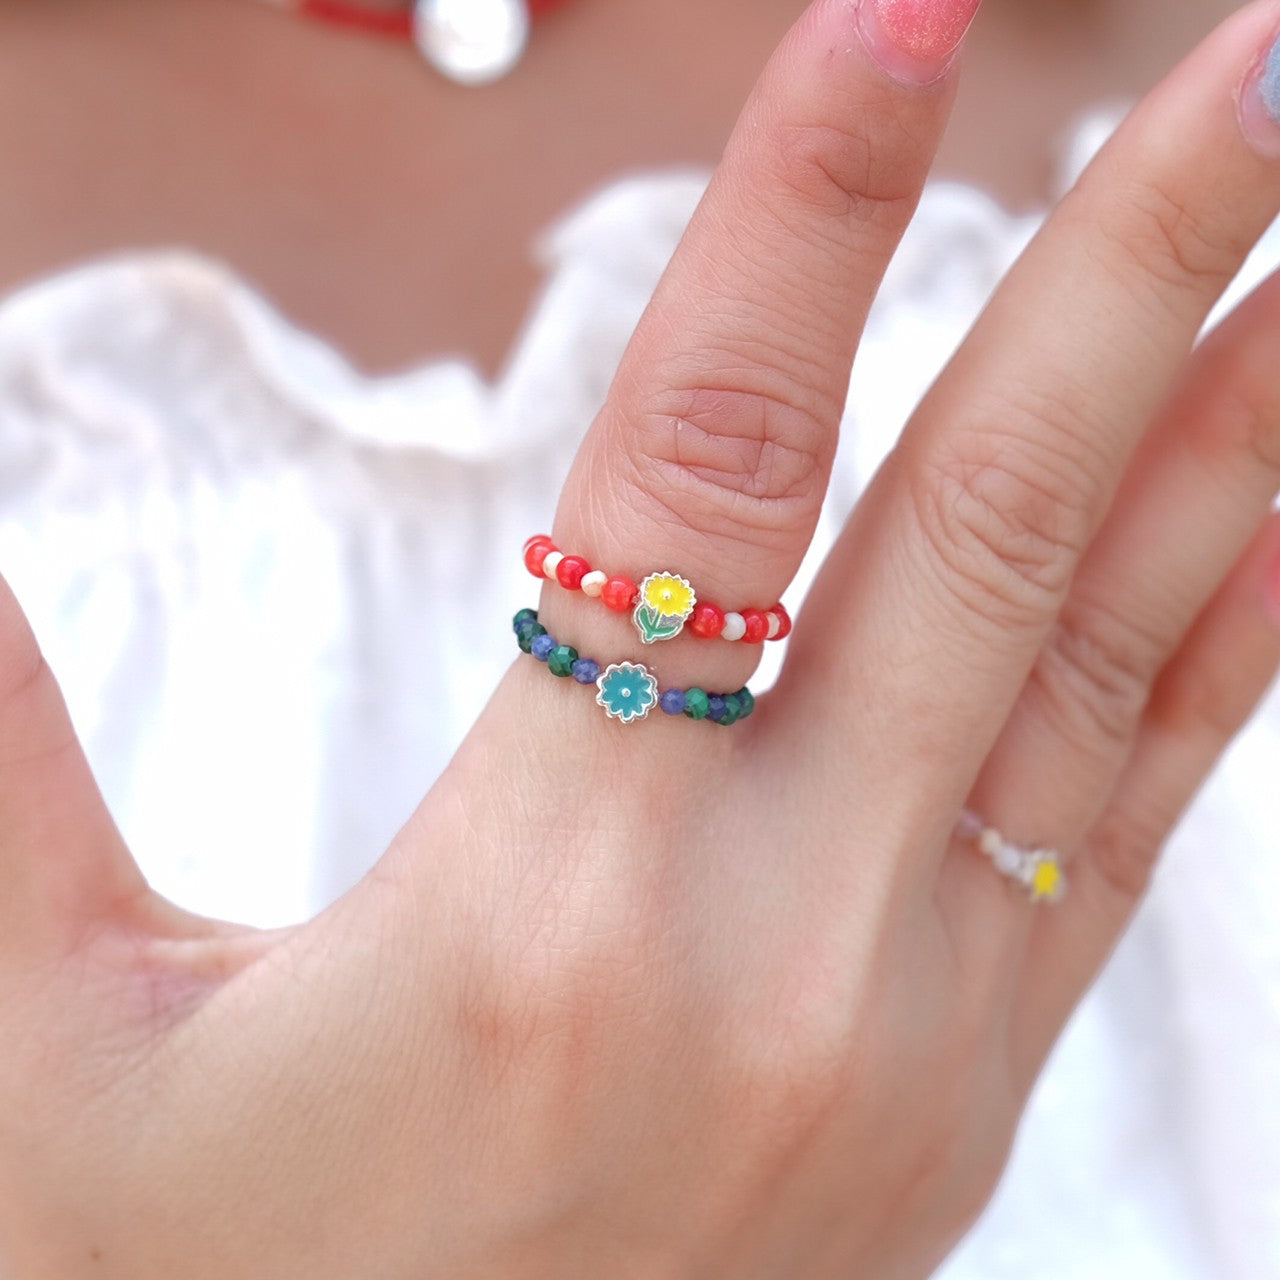 แหวนหินแท้ Moomin Flower